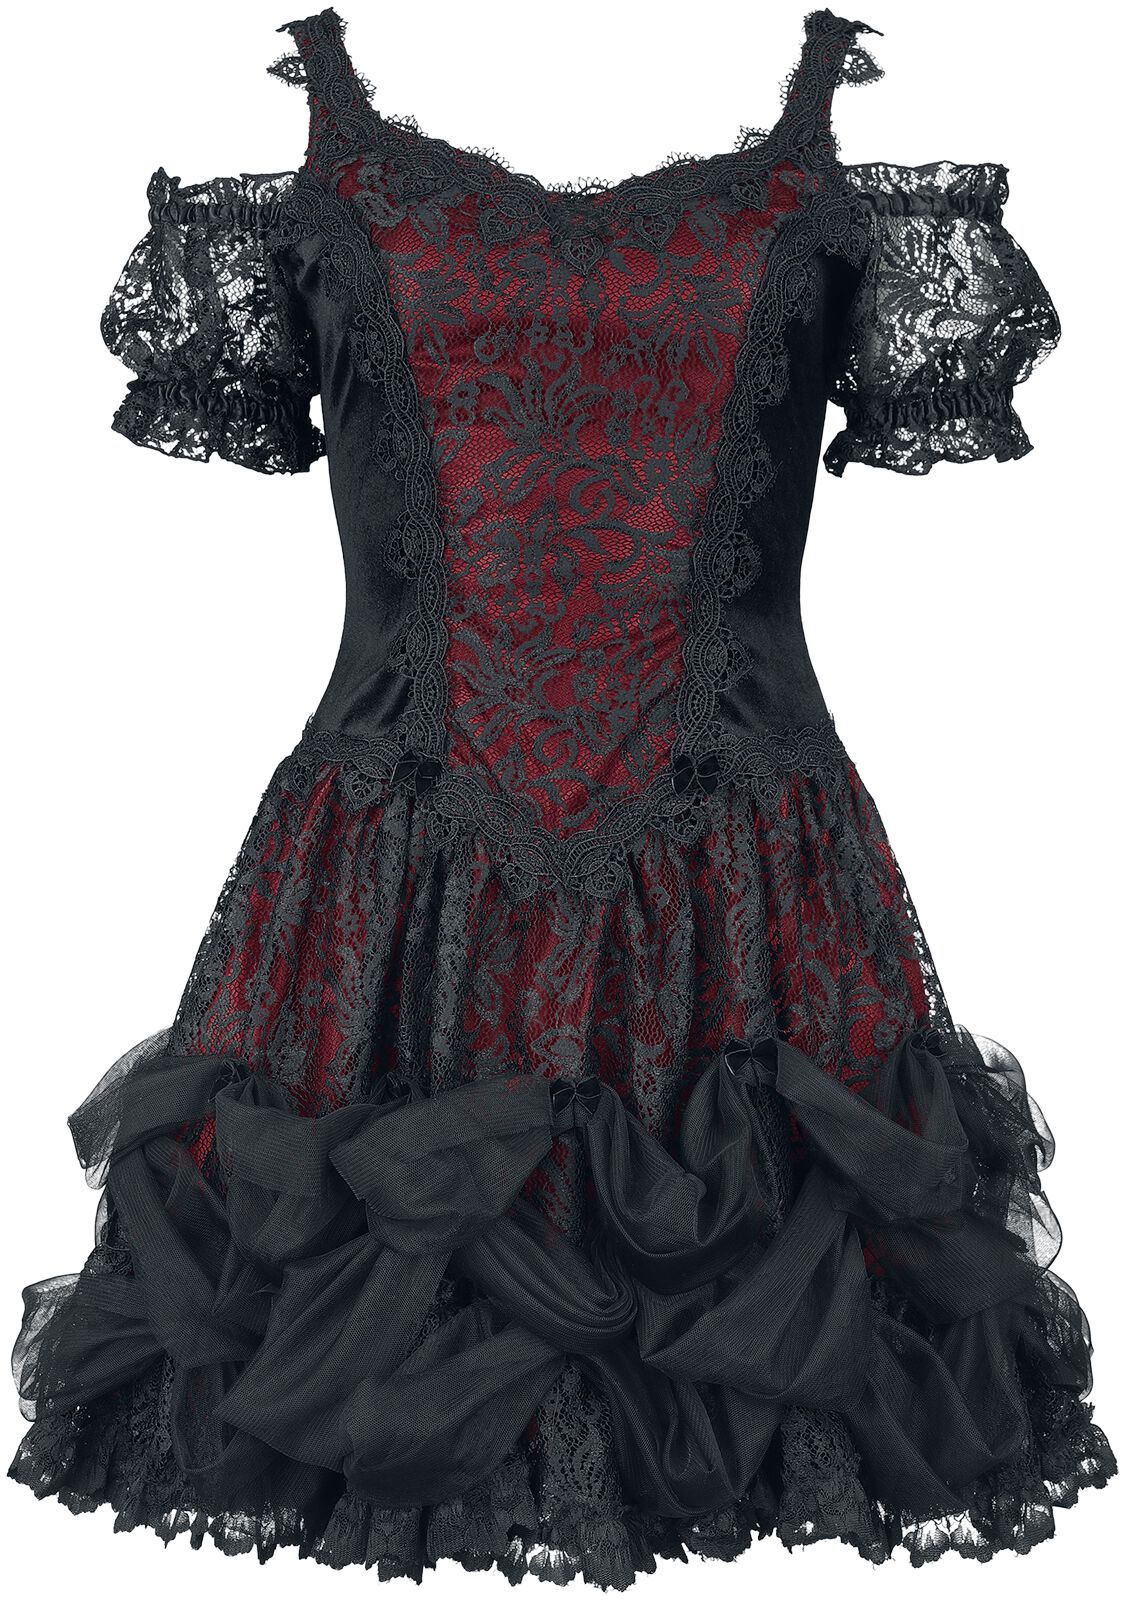 Sinister Gothic Gothic Dress Kurzes Kleid schwarz rot in M